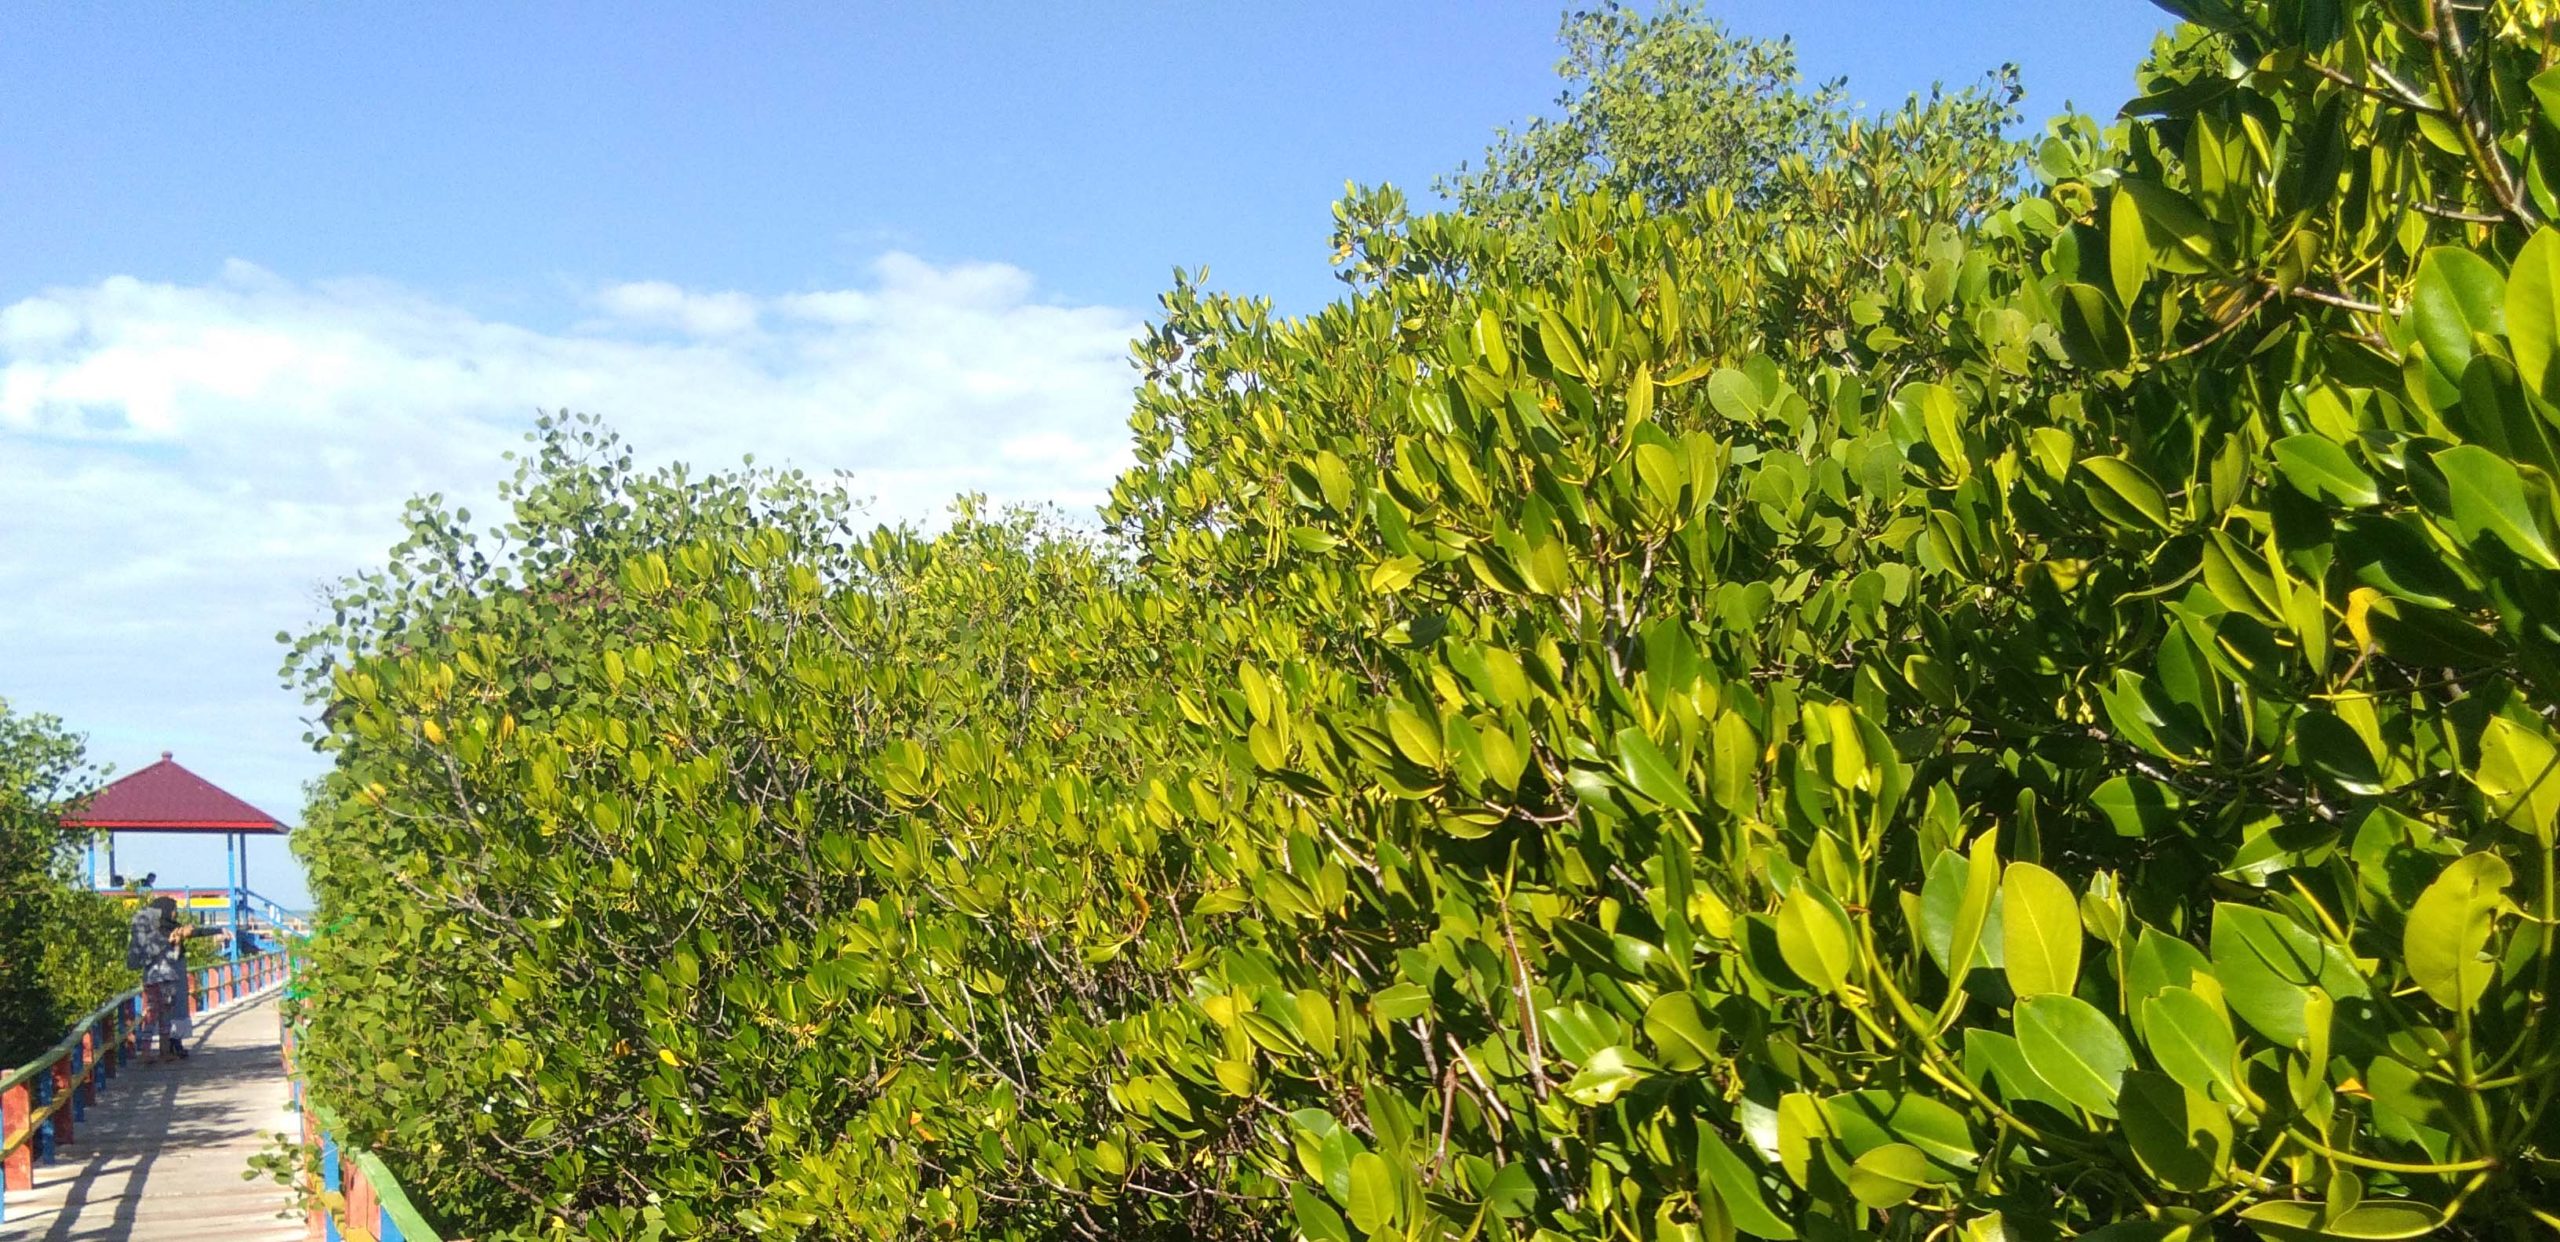 Hutan mangrove nan rimbun di Lembung, jadi ekowisata. Foto: Gafur Abdullah/ Mongabay Indonesia